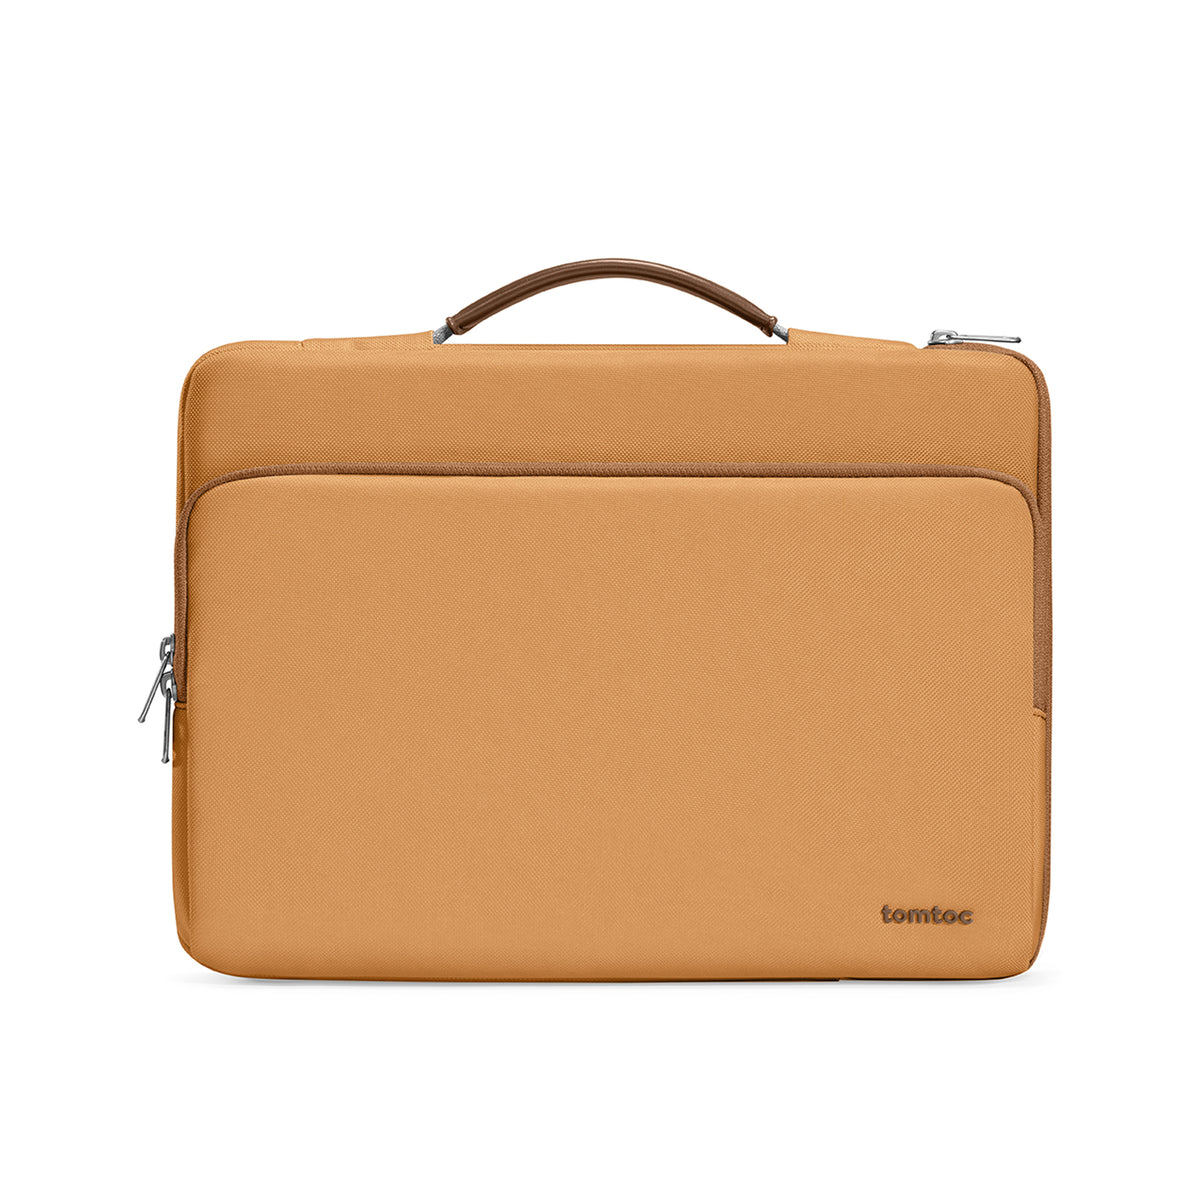 Lady Laptop Bag/ Lady Laptop Bag / Handbag Women / Ladies Bag